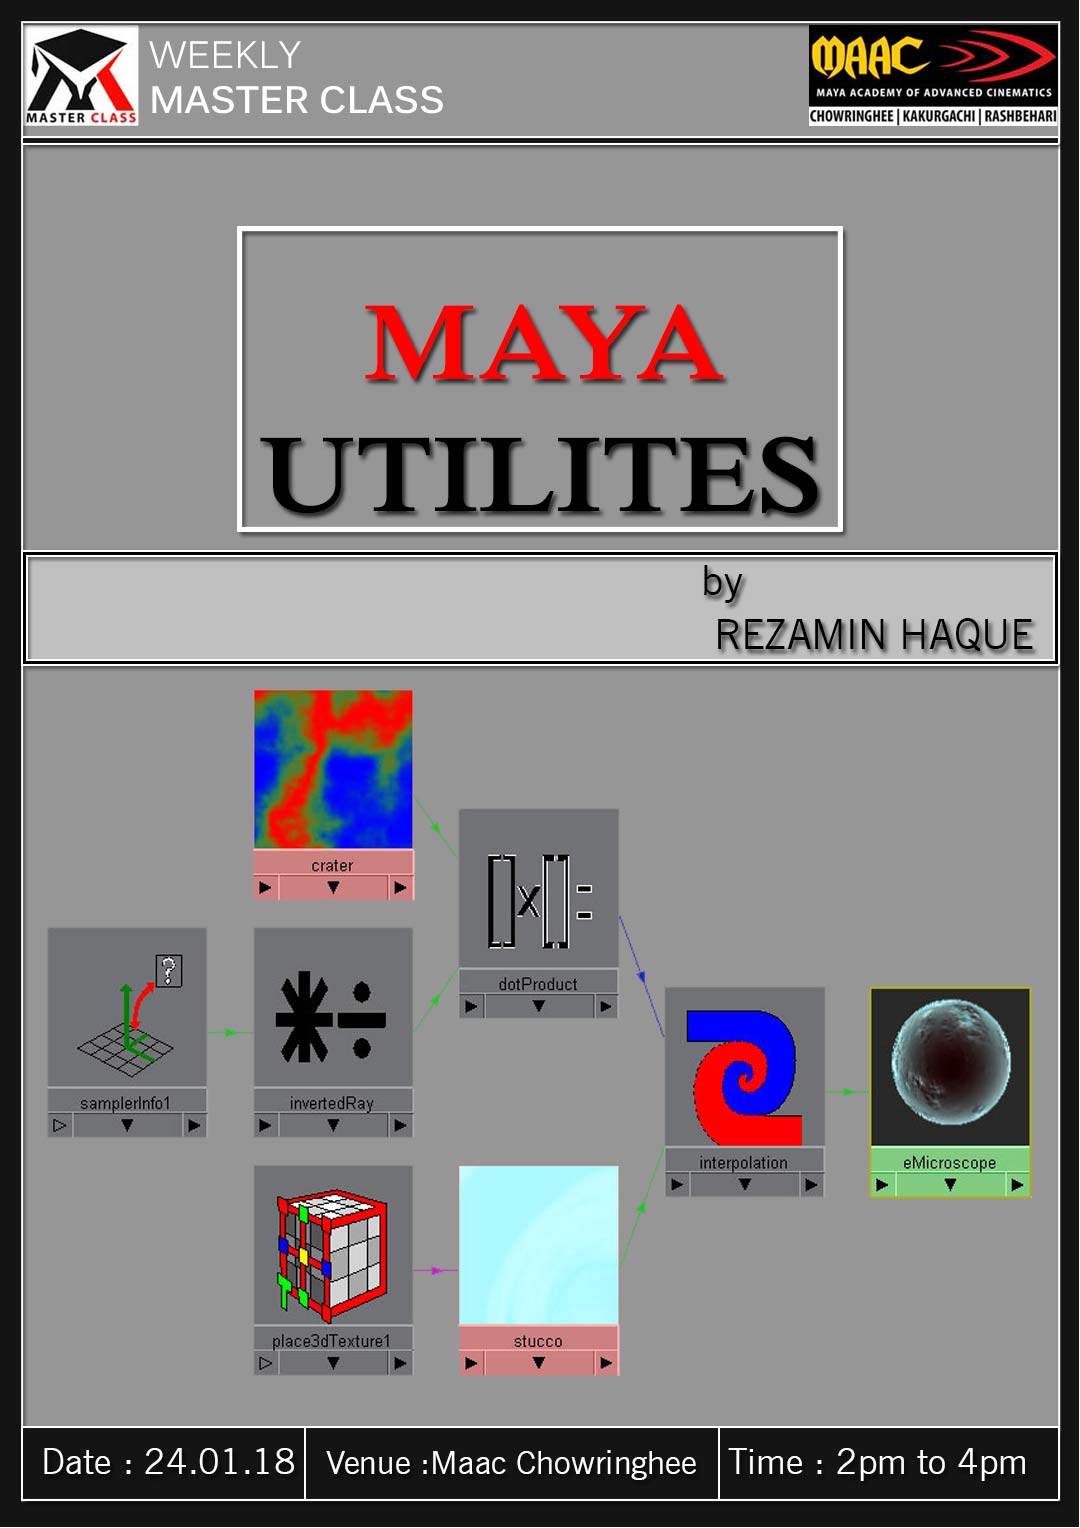 Weekly Master Class on Maya Utilities